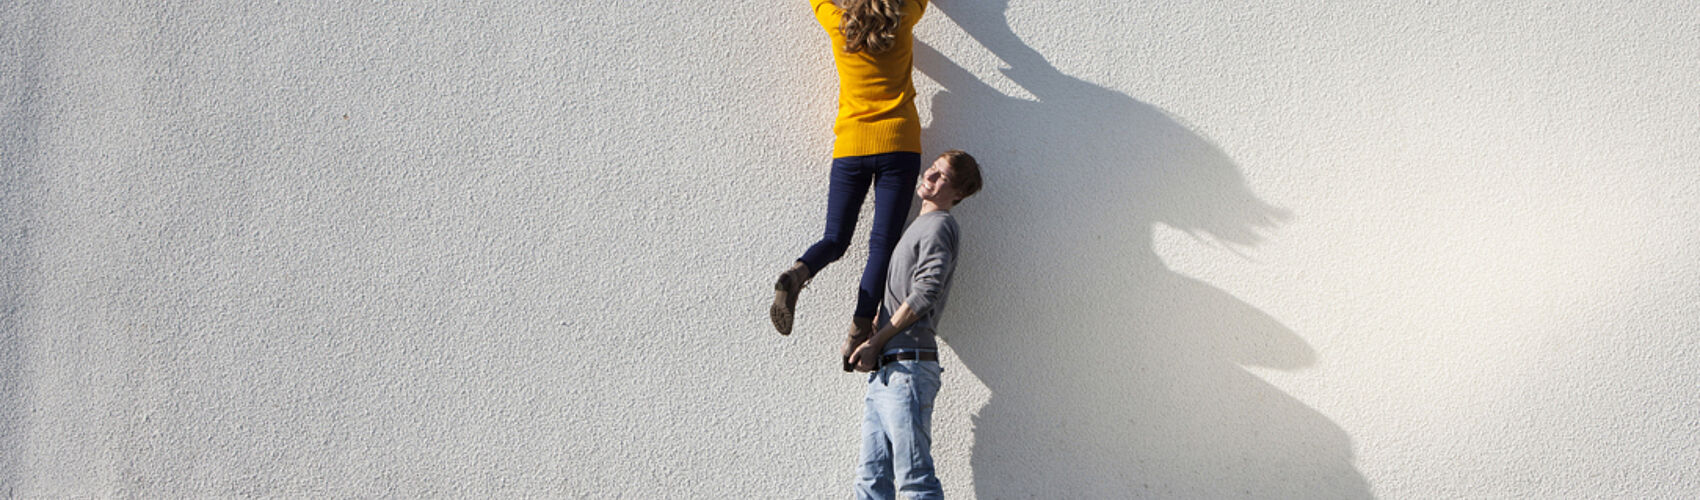 Mann hilft Frau beim Übersteigen einer Mauer